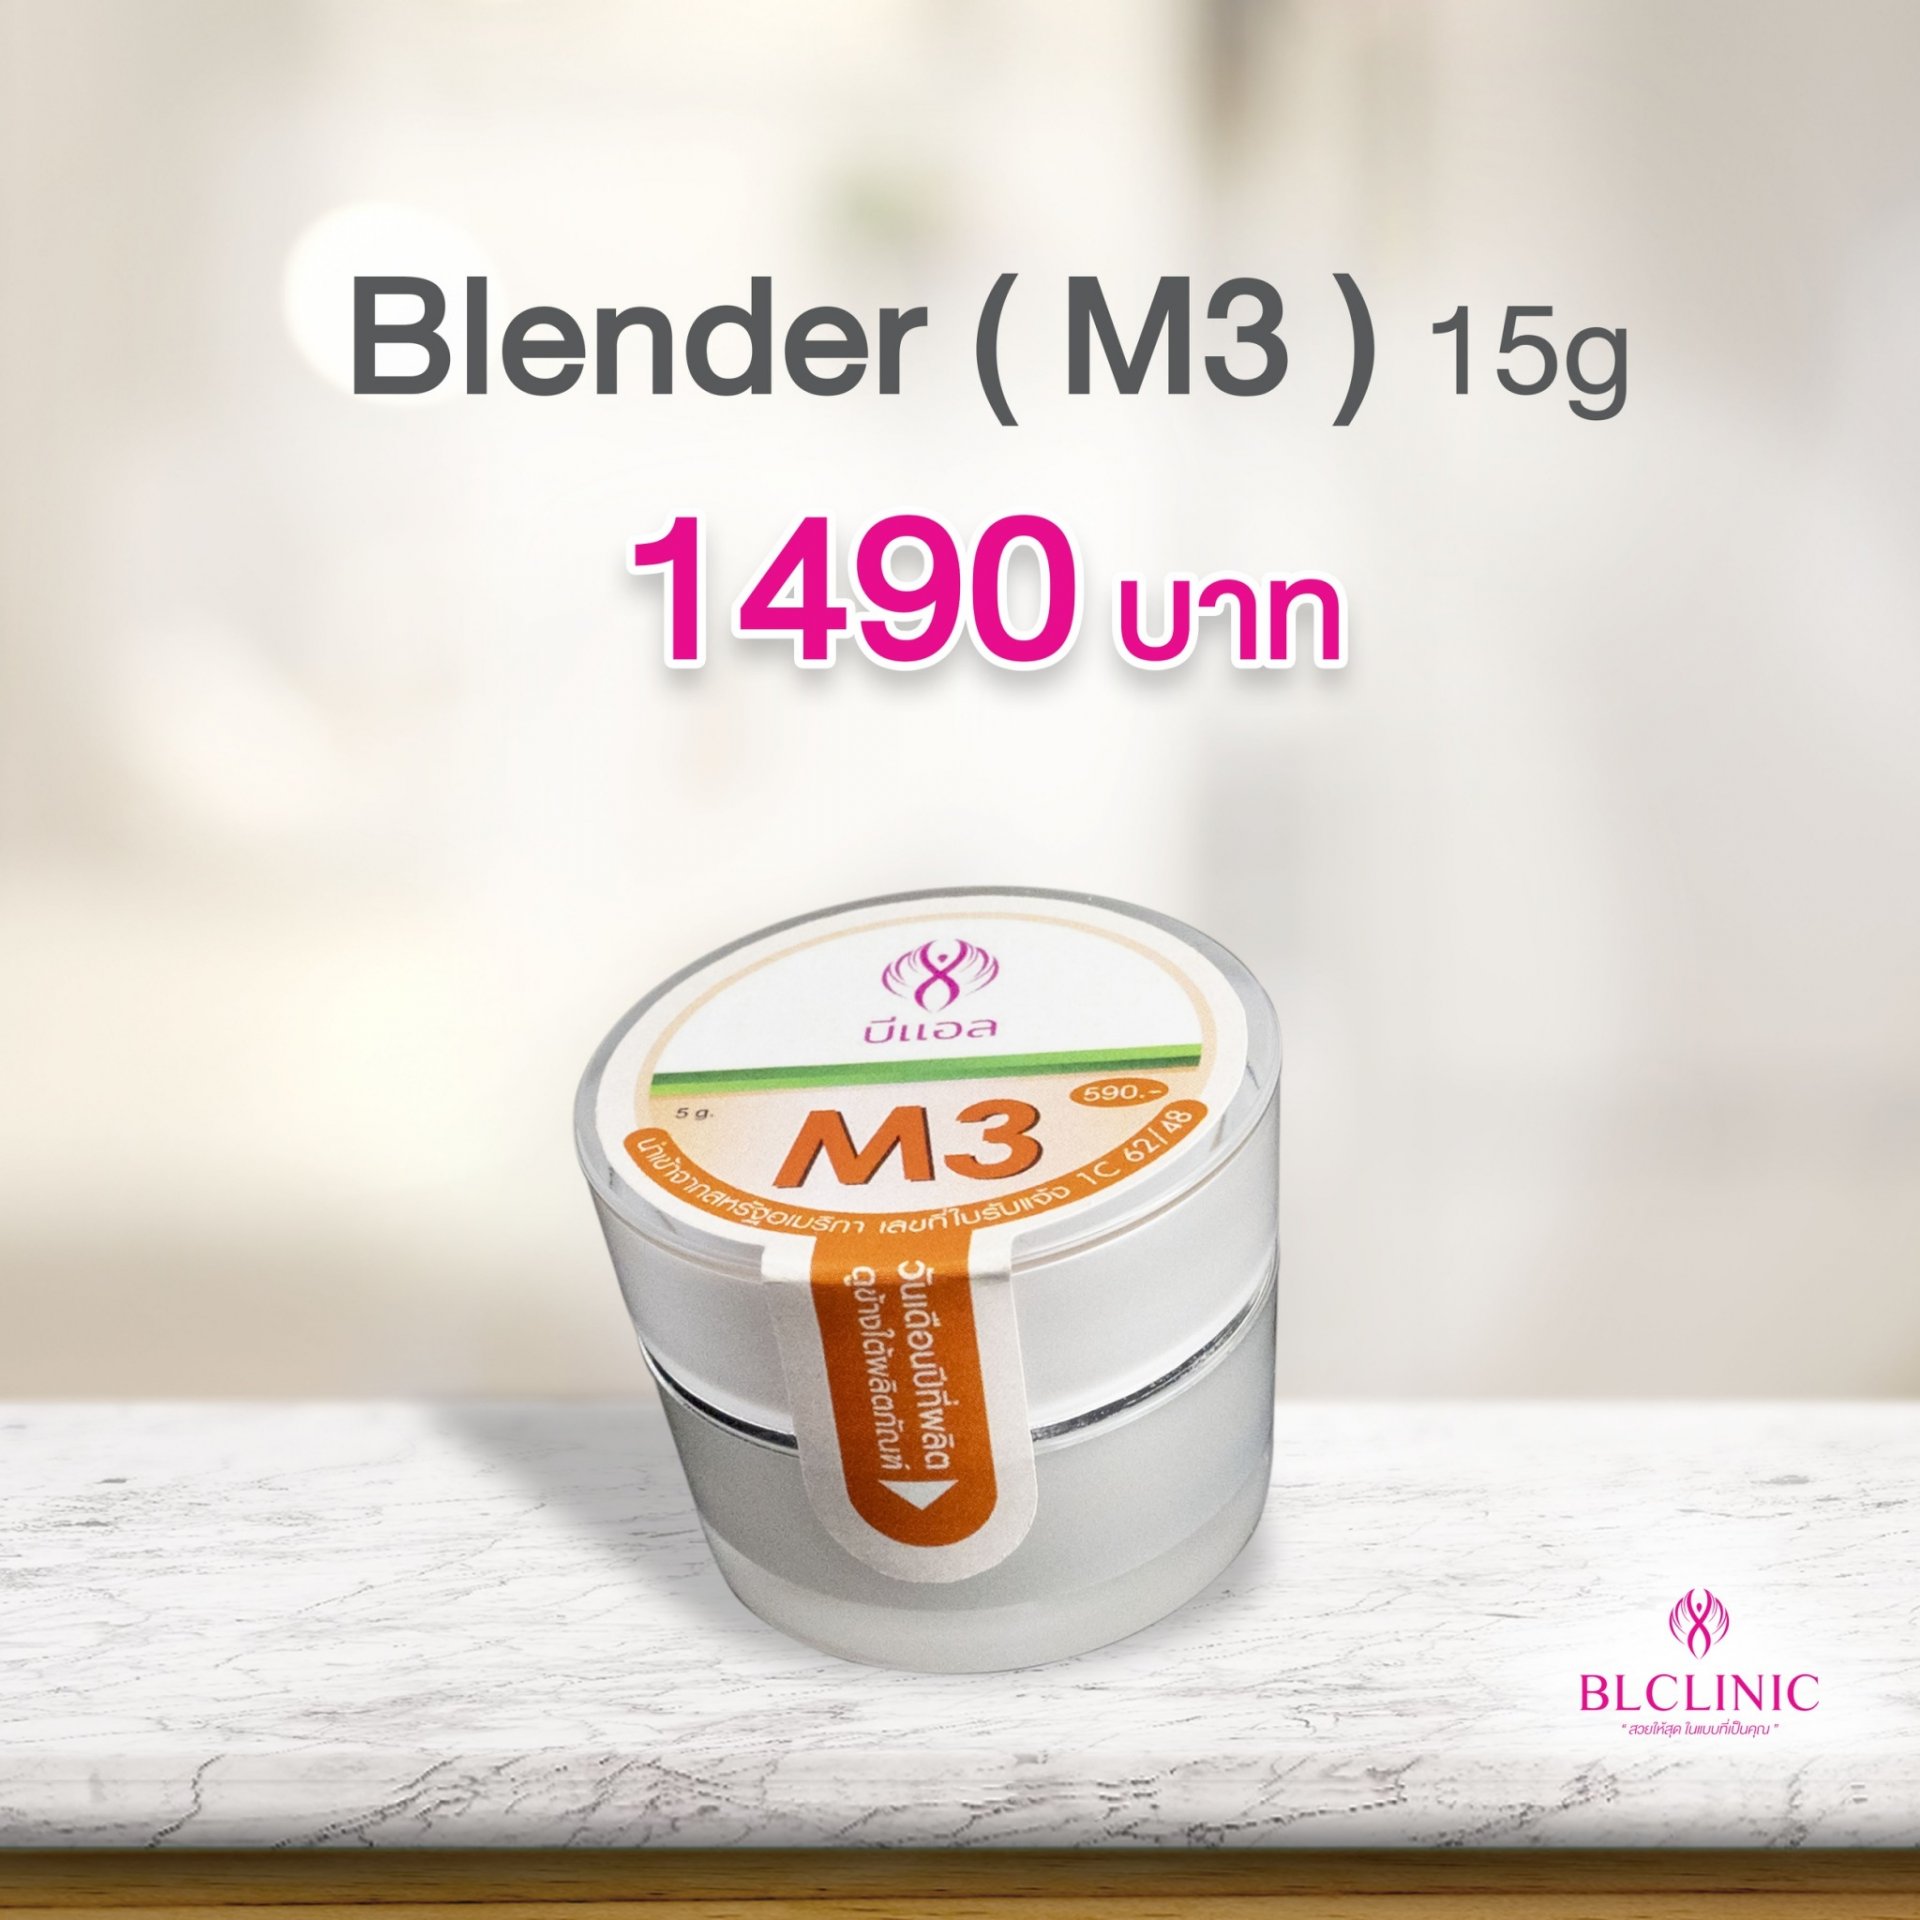 Blender ( M3 ) 15g